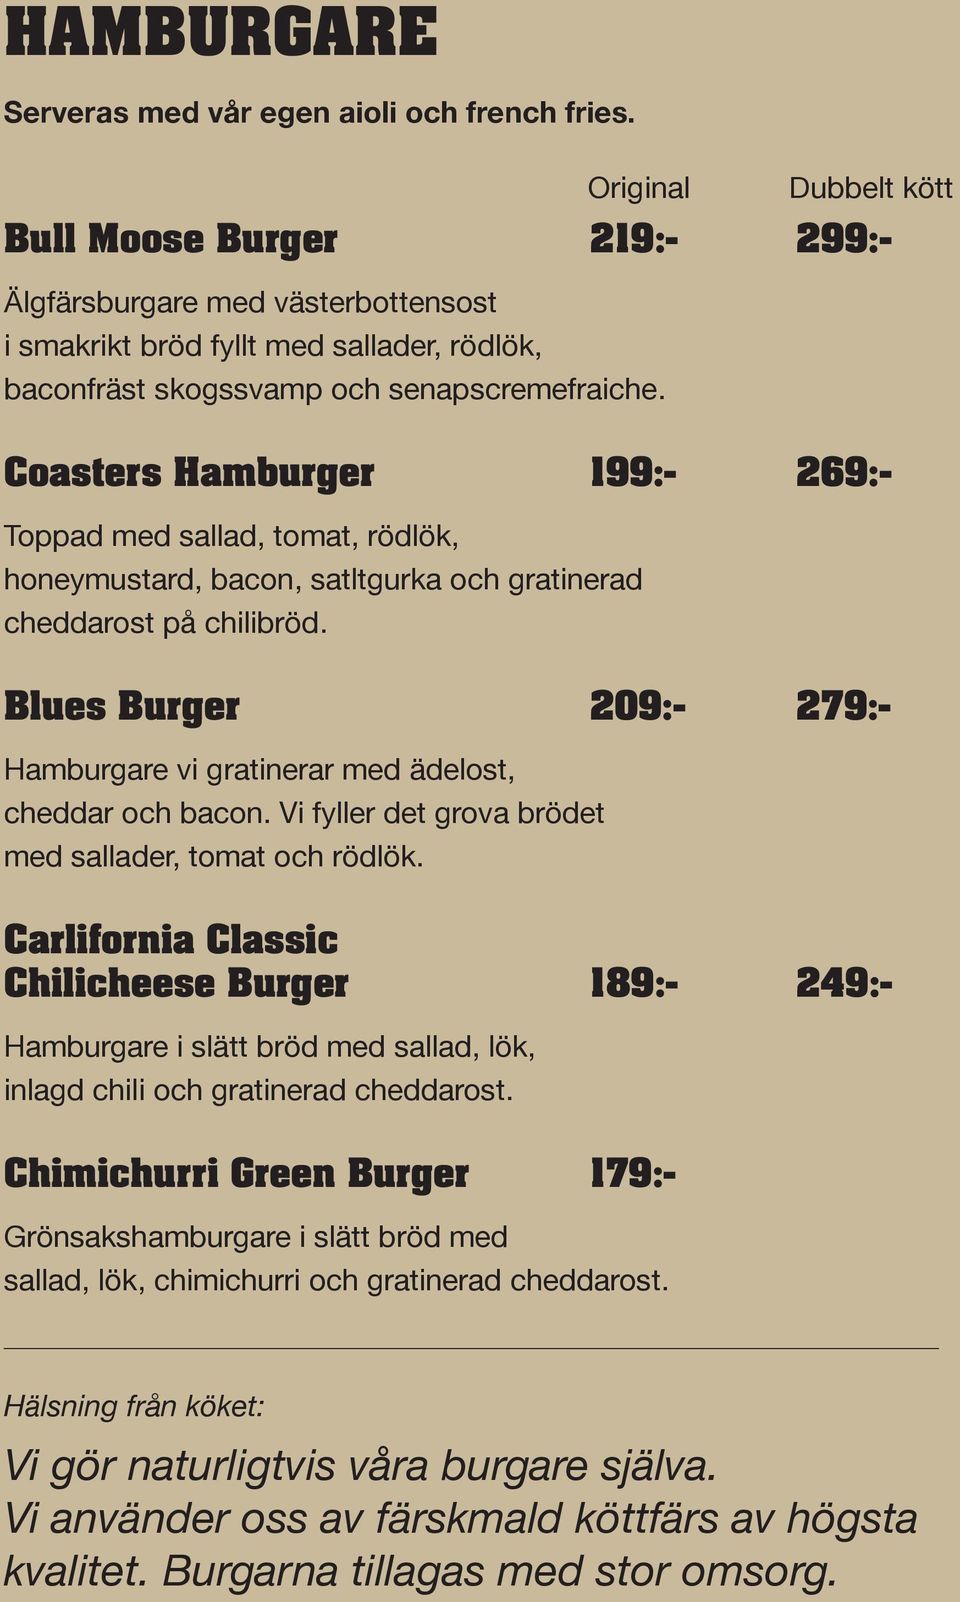 Coasters Hamburger 199:- 269:- Toppad med sallad, tomat, rödlök, honeymustard, bacon, satltgurka och gratinerad cheddarost på chilibröd.